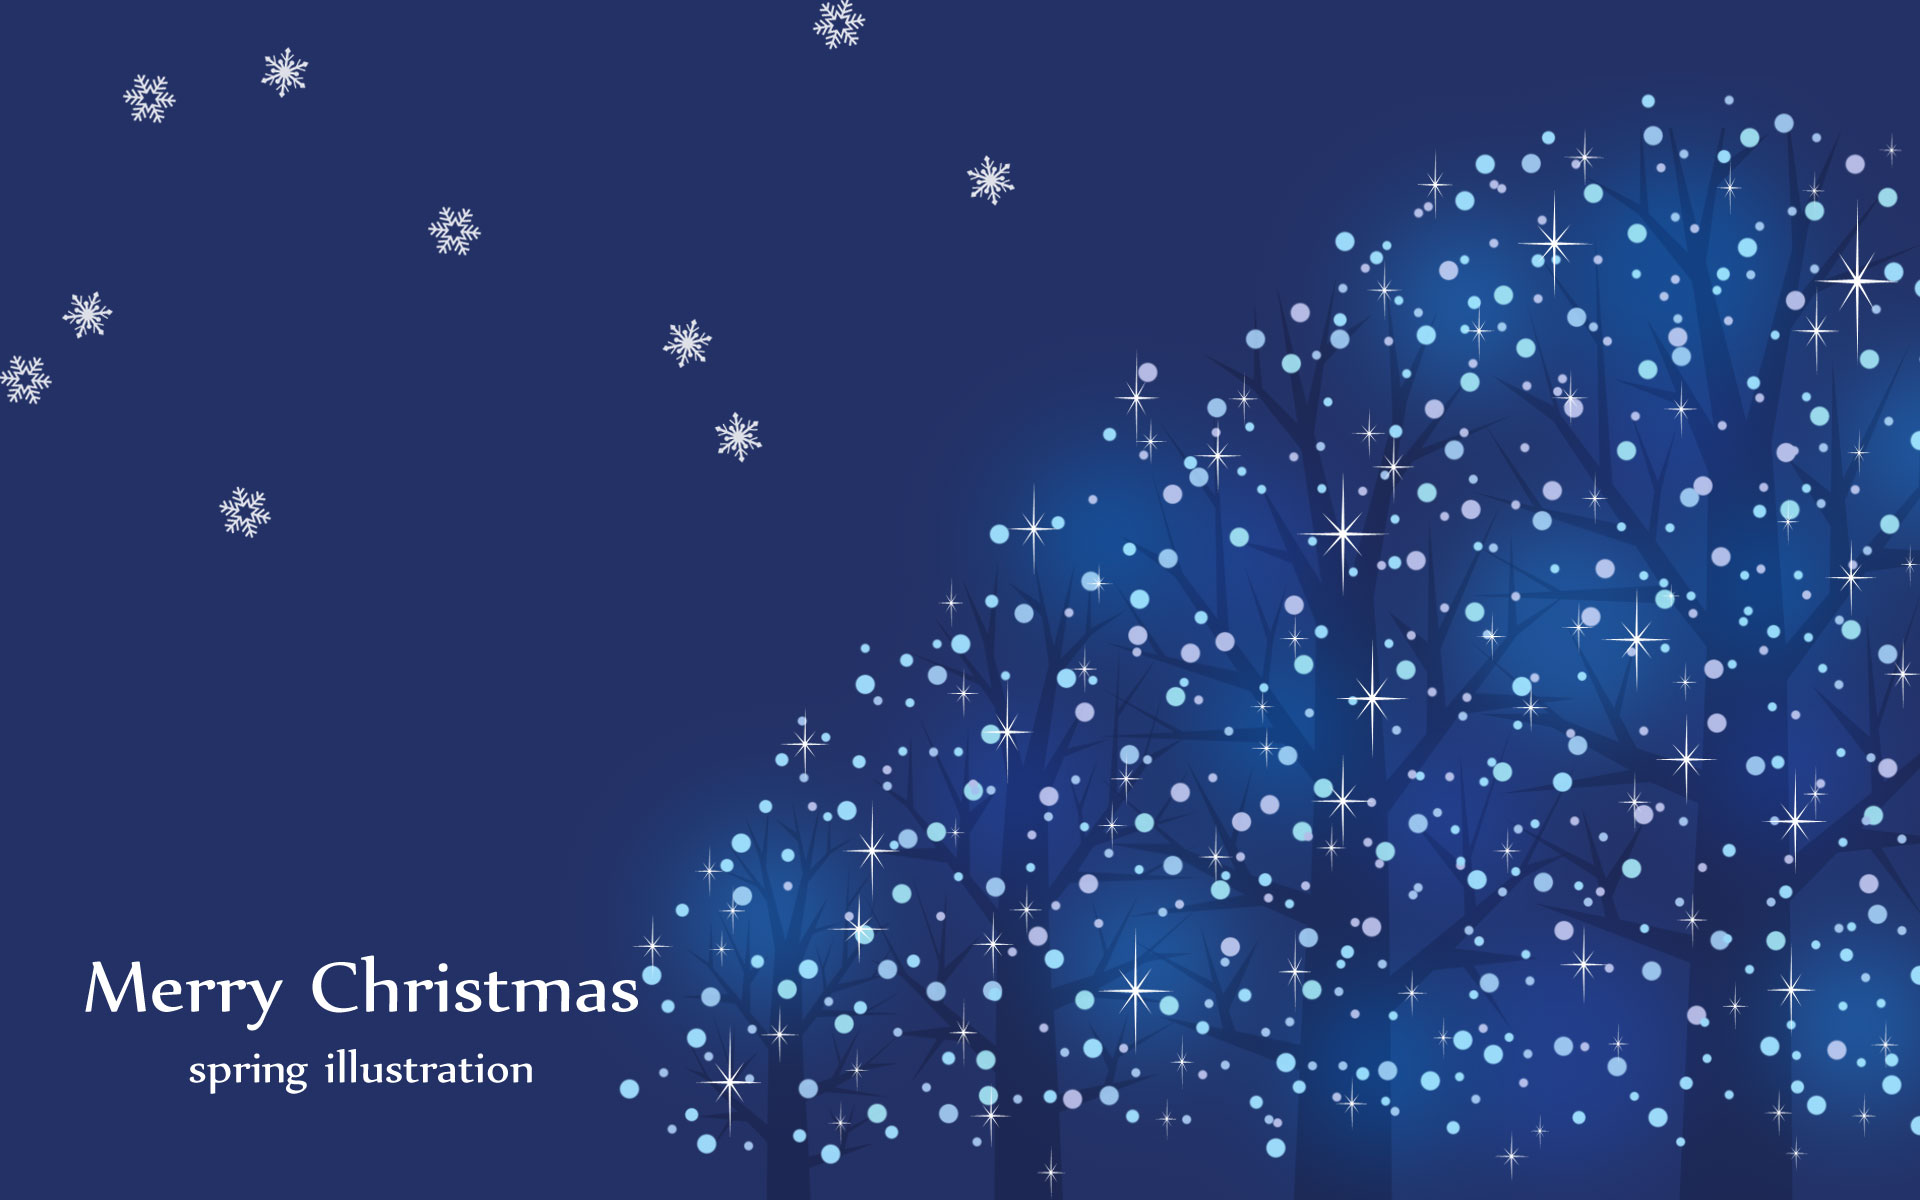 ブルーイルミネーション クリスマスのイラスト壁紙 季節のイラストpc壁紙